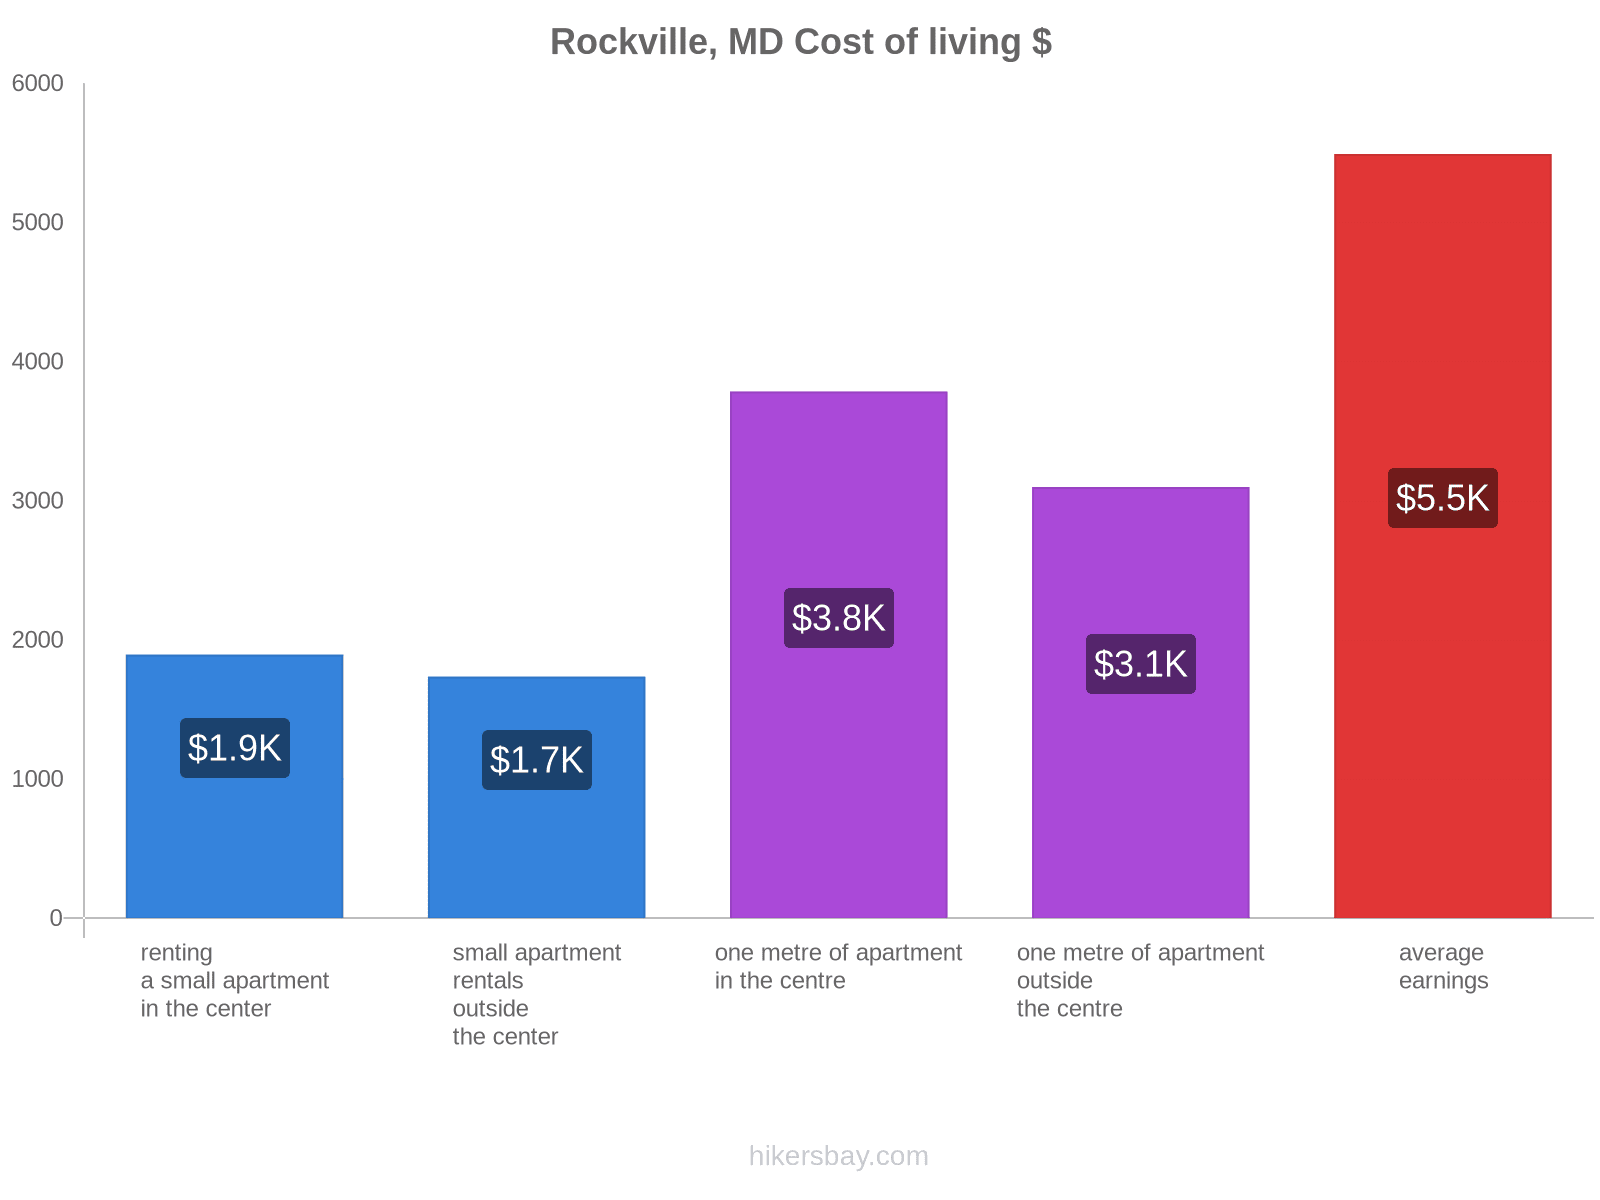 Rockville, MD cost of living hikersbay.com